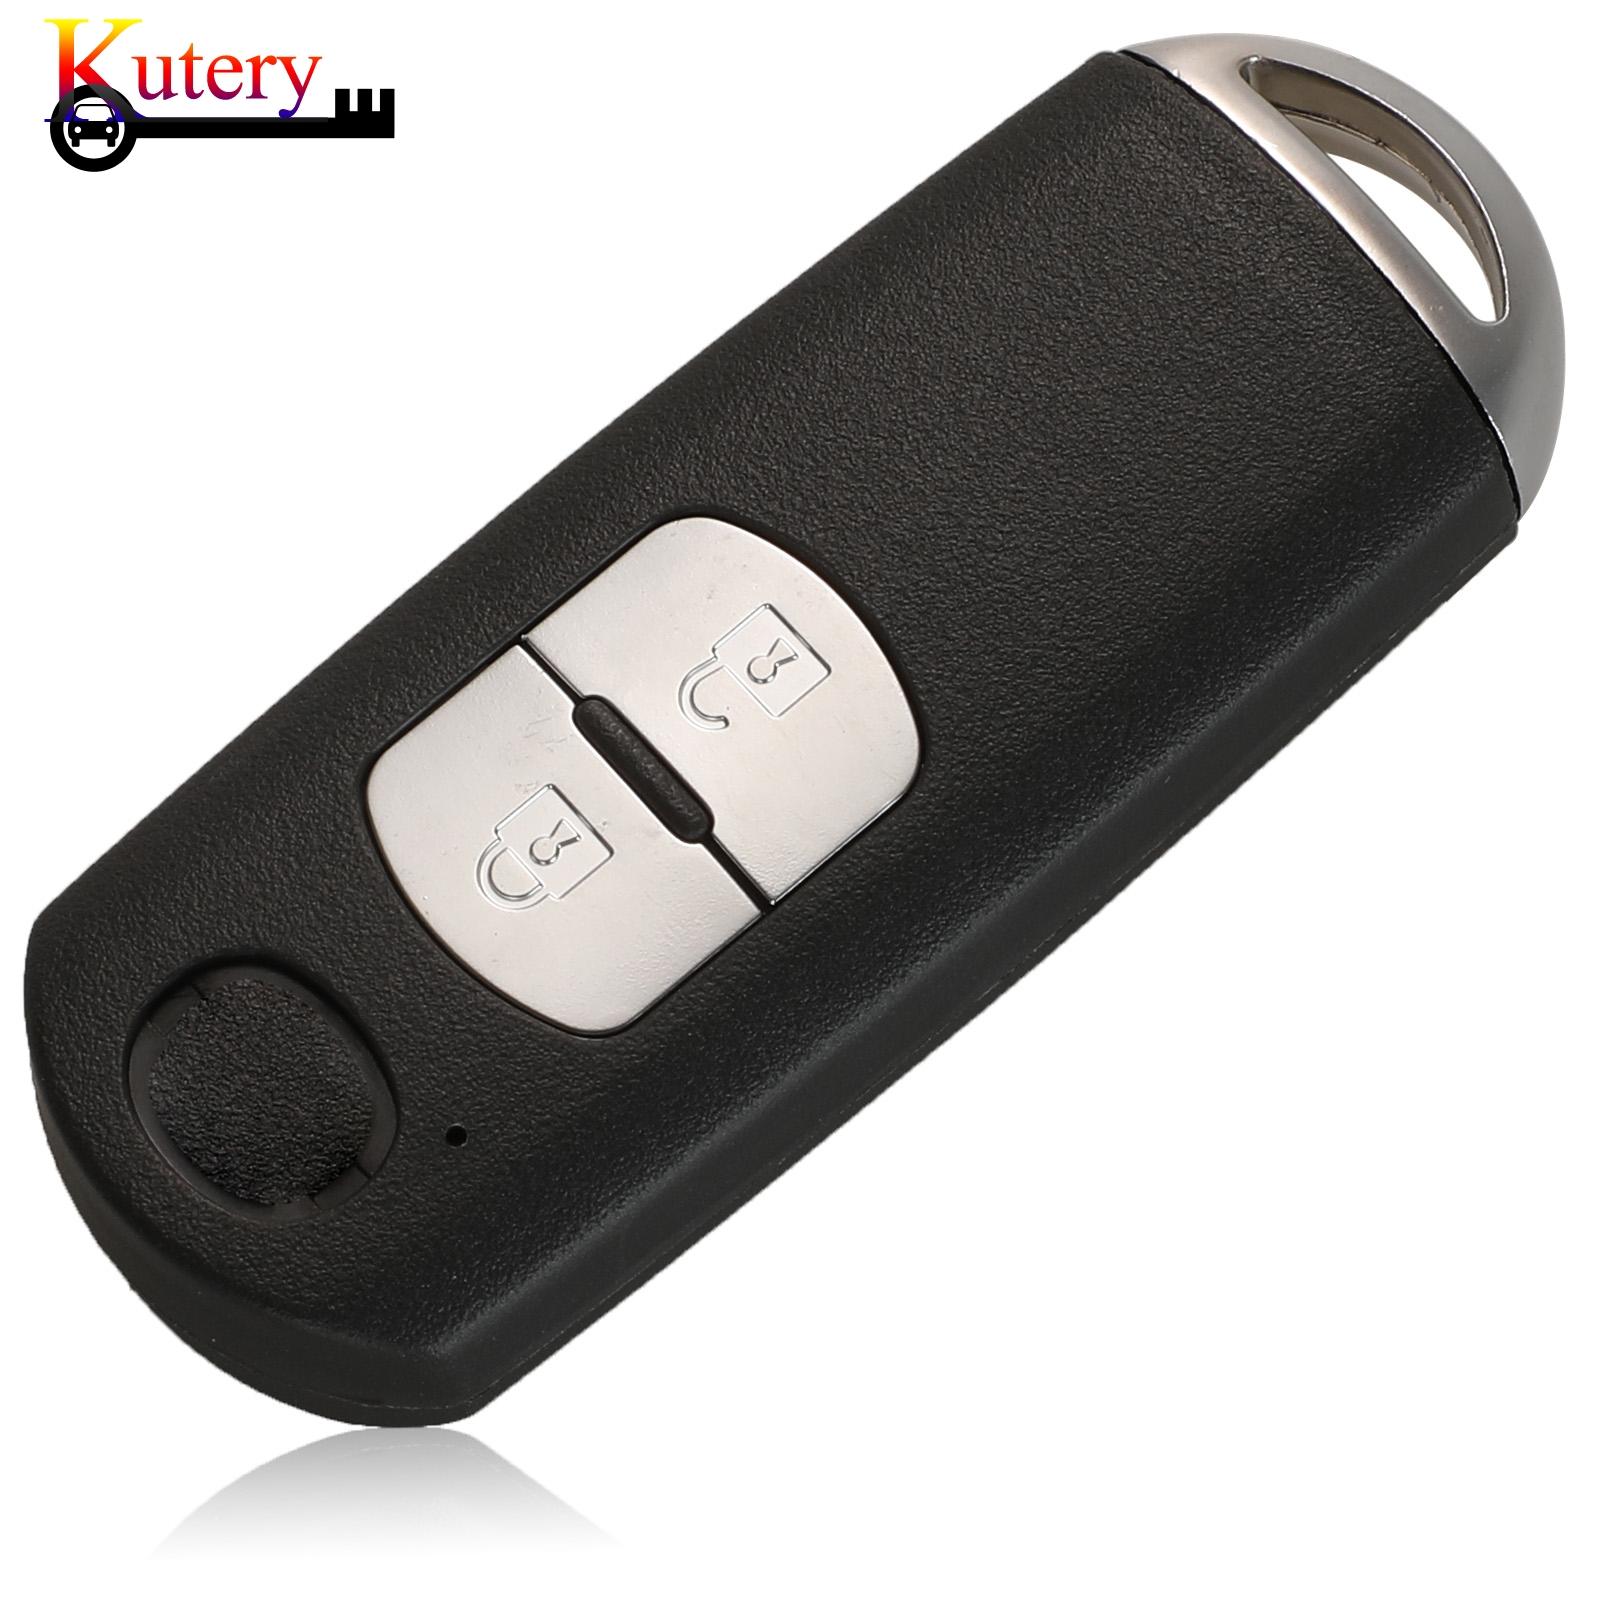 Изображение товара: Kutery дистанционный умный Автомобильный ключ для MAZDA CX-3 Axela CX-5 Atenza 2/3 кнопки 433 МГц ID49 чип SKE13E-01 SKE13E-02